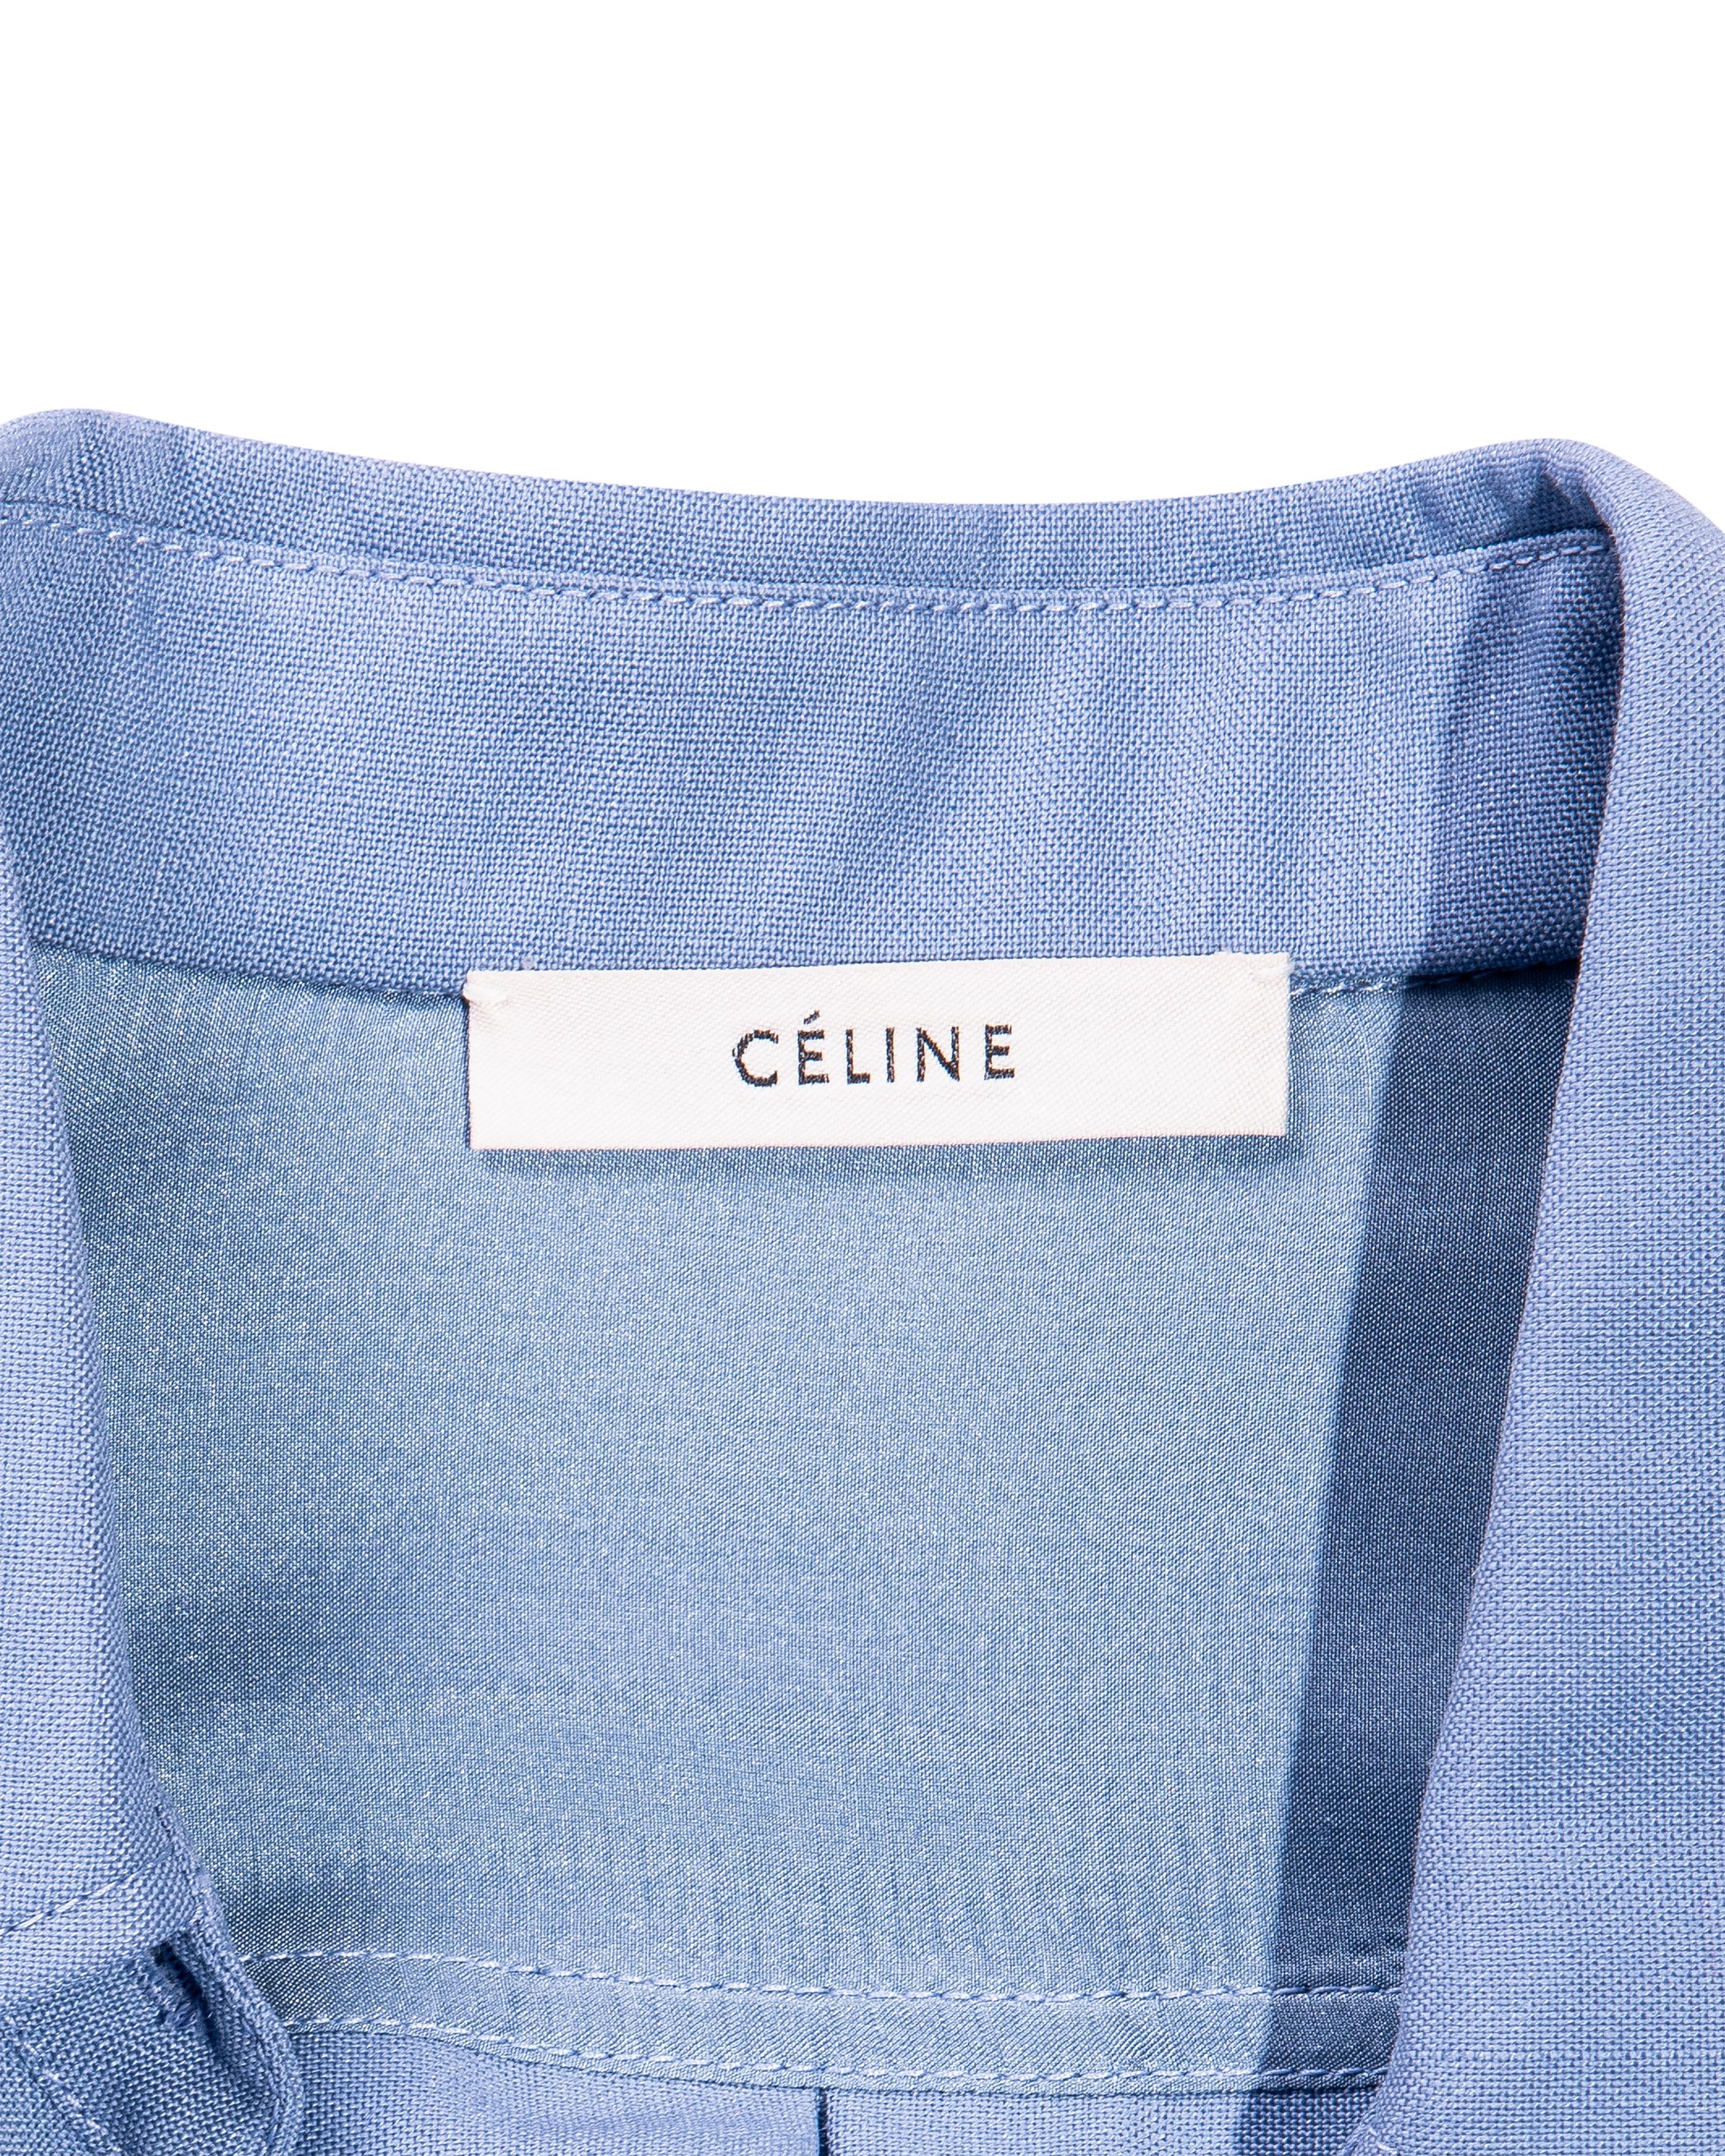 A/W 2017 Céline by Phoebe Philo Button-Up Light Blue Shirt Dress 8